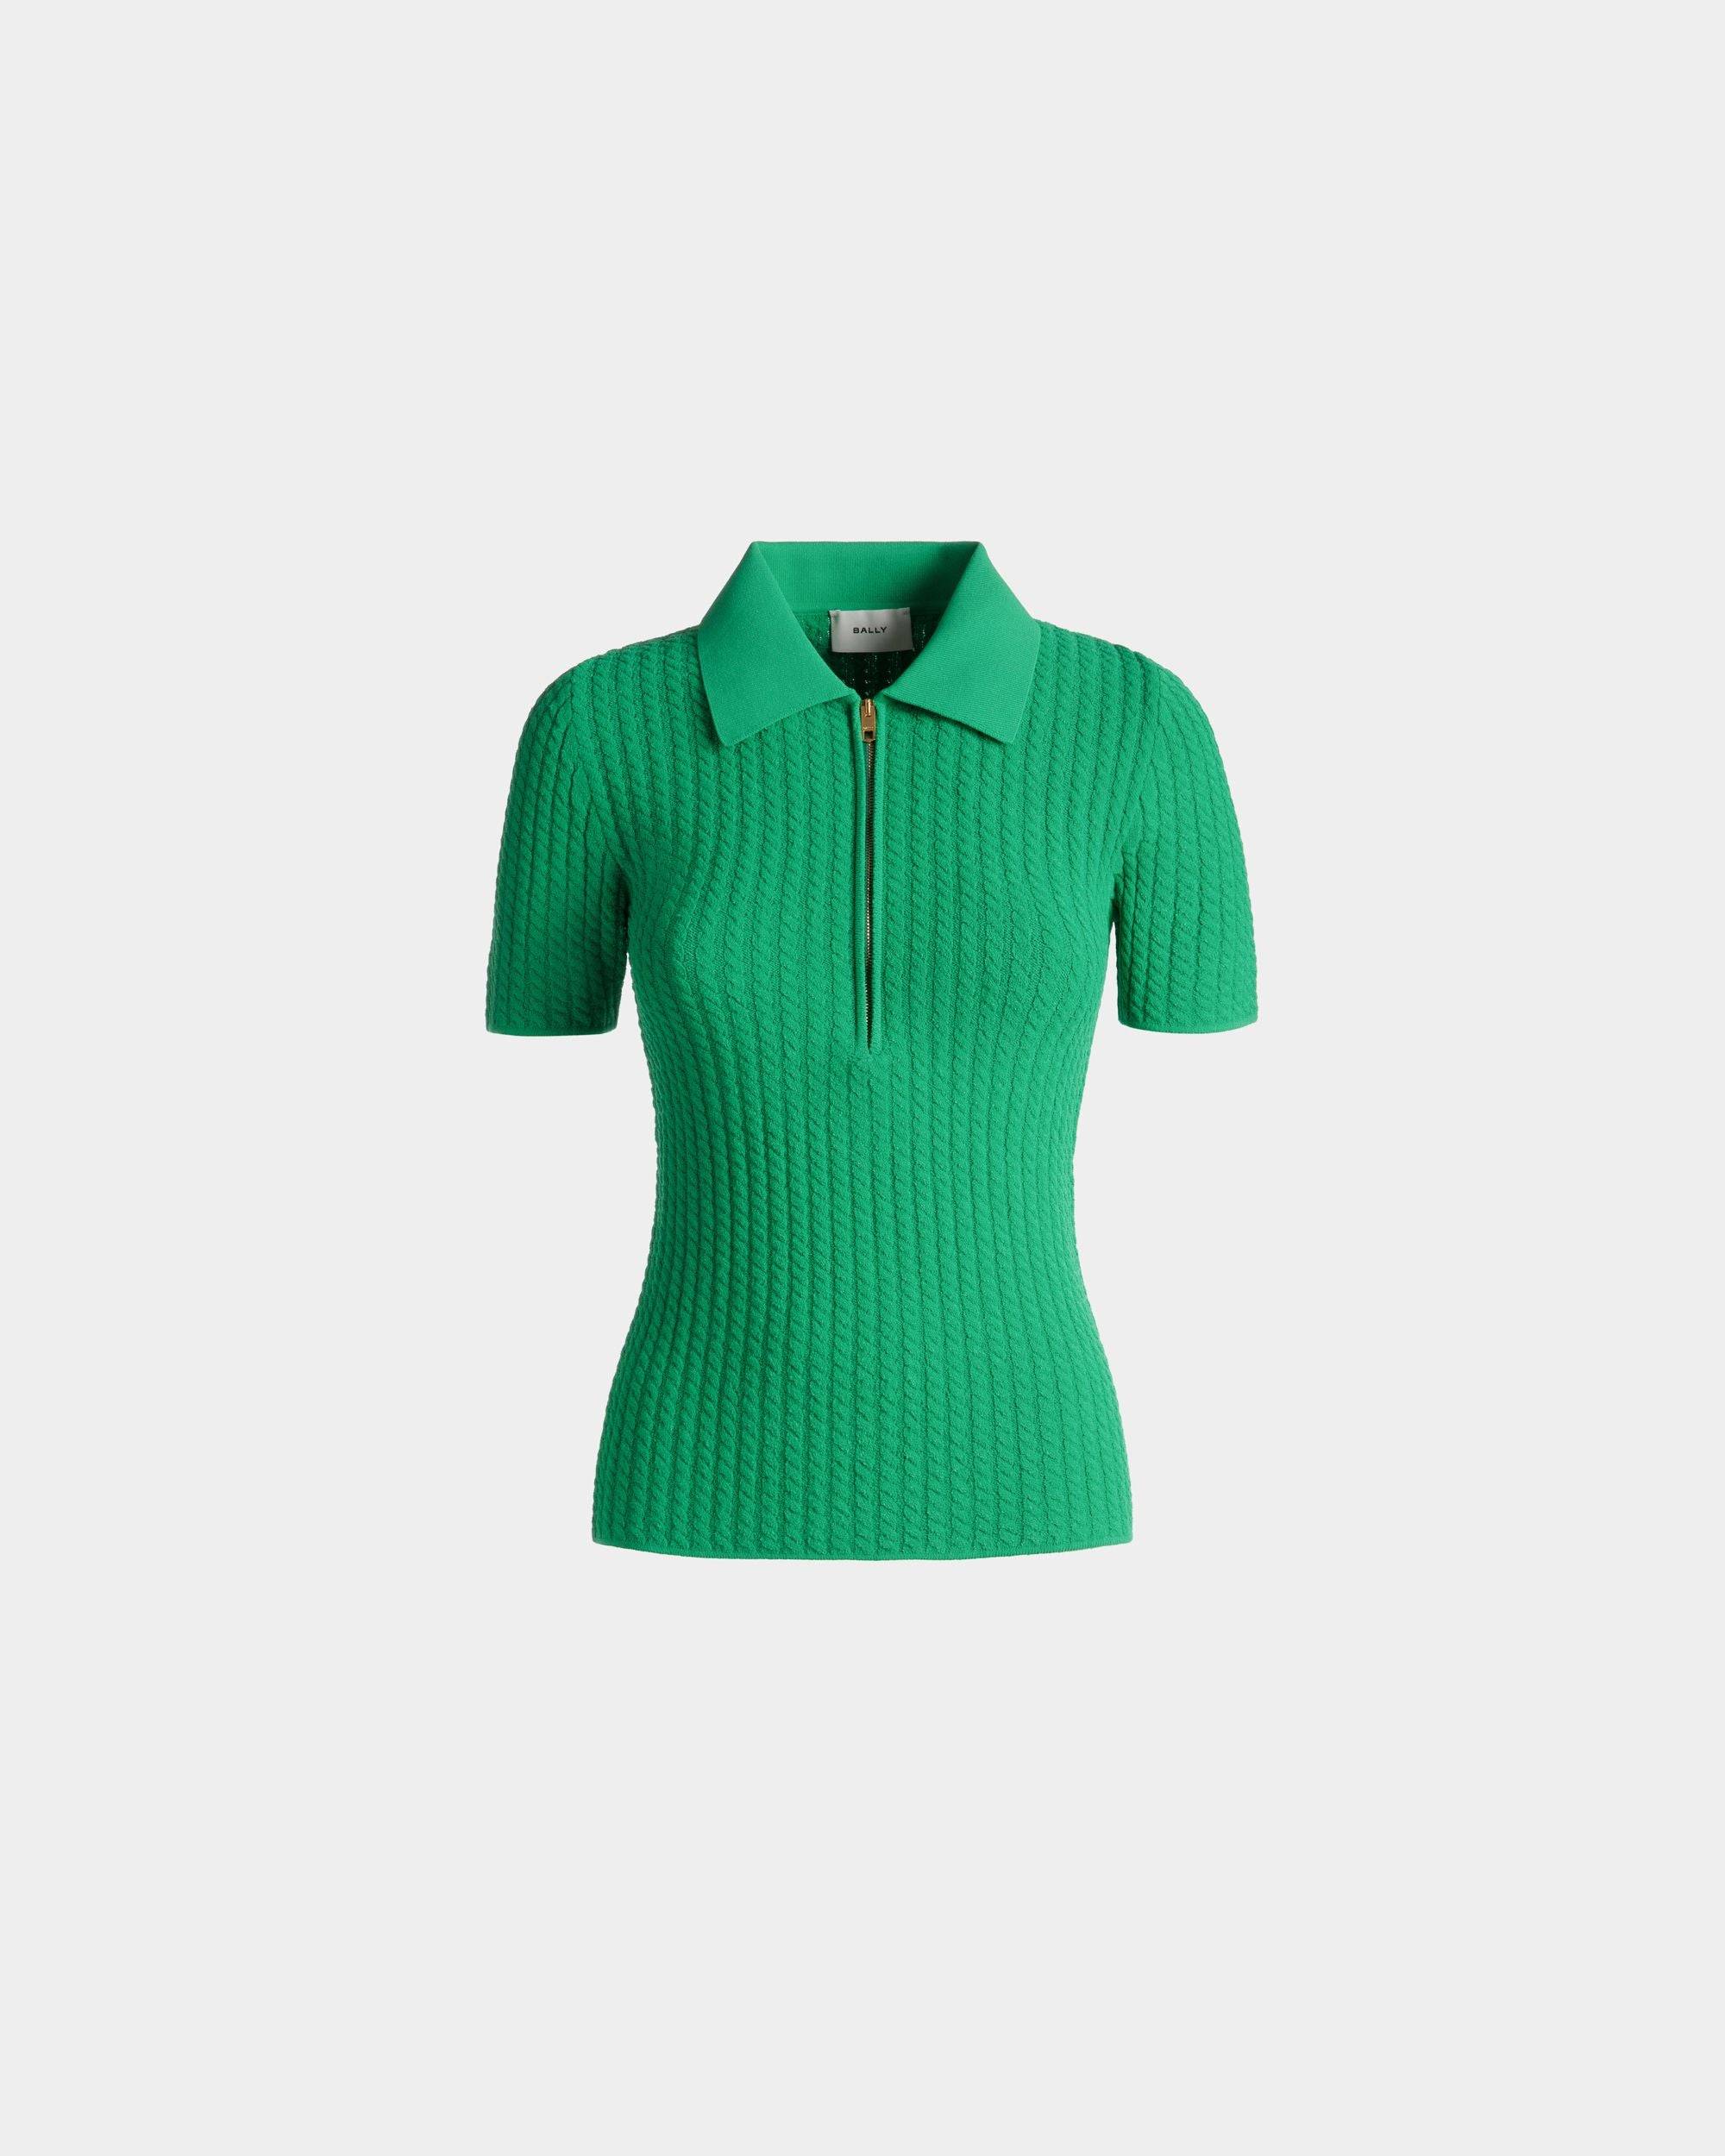 Poloshirt mit halbem Reißverschluss für Damen aus Strickgewebe in Grün | Bally | Still Life Vorderseite